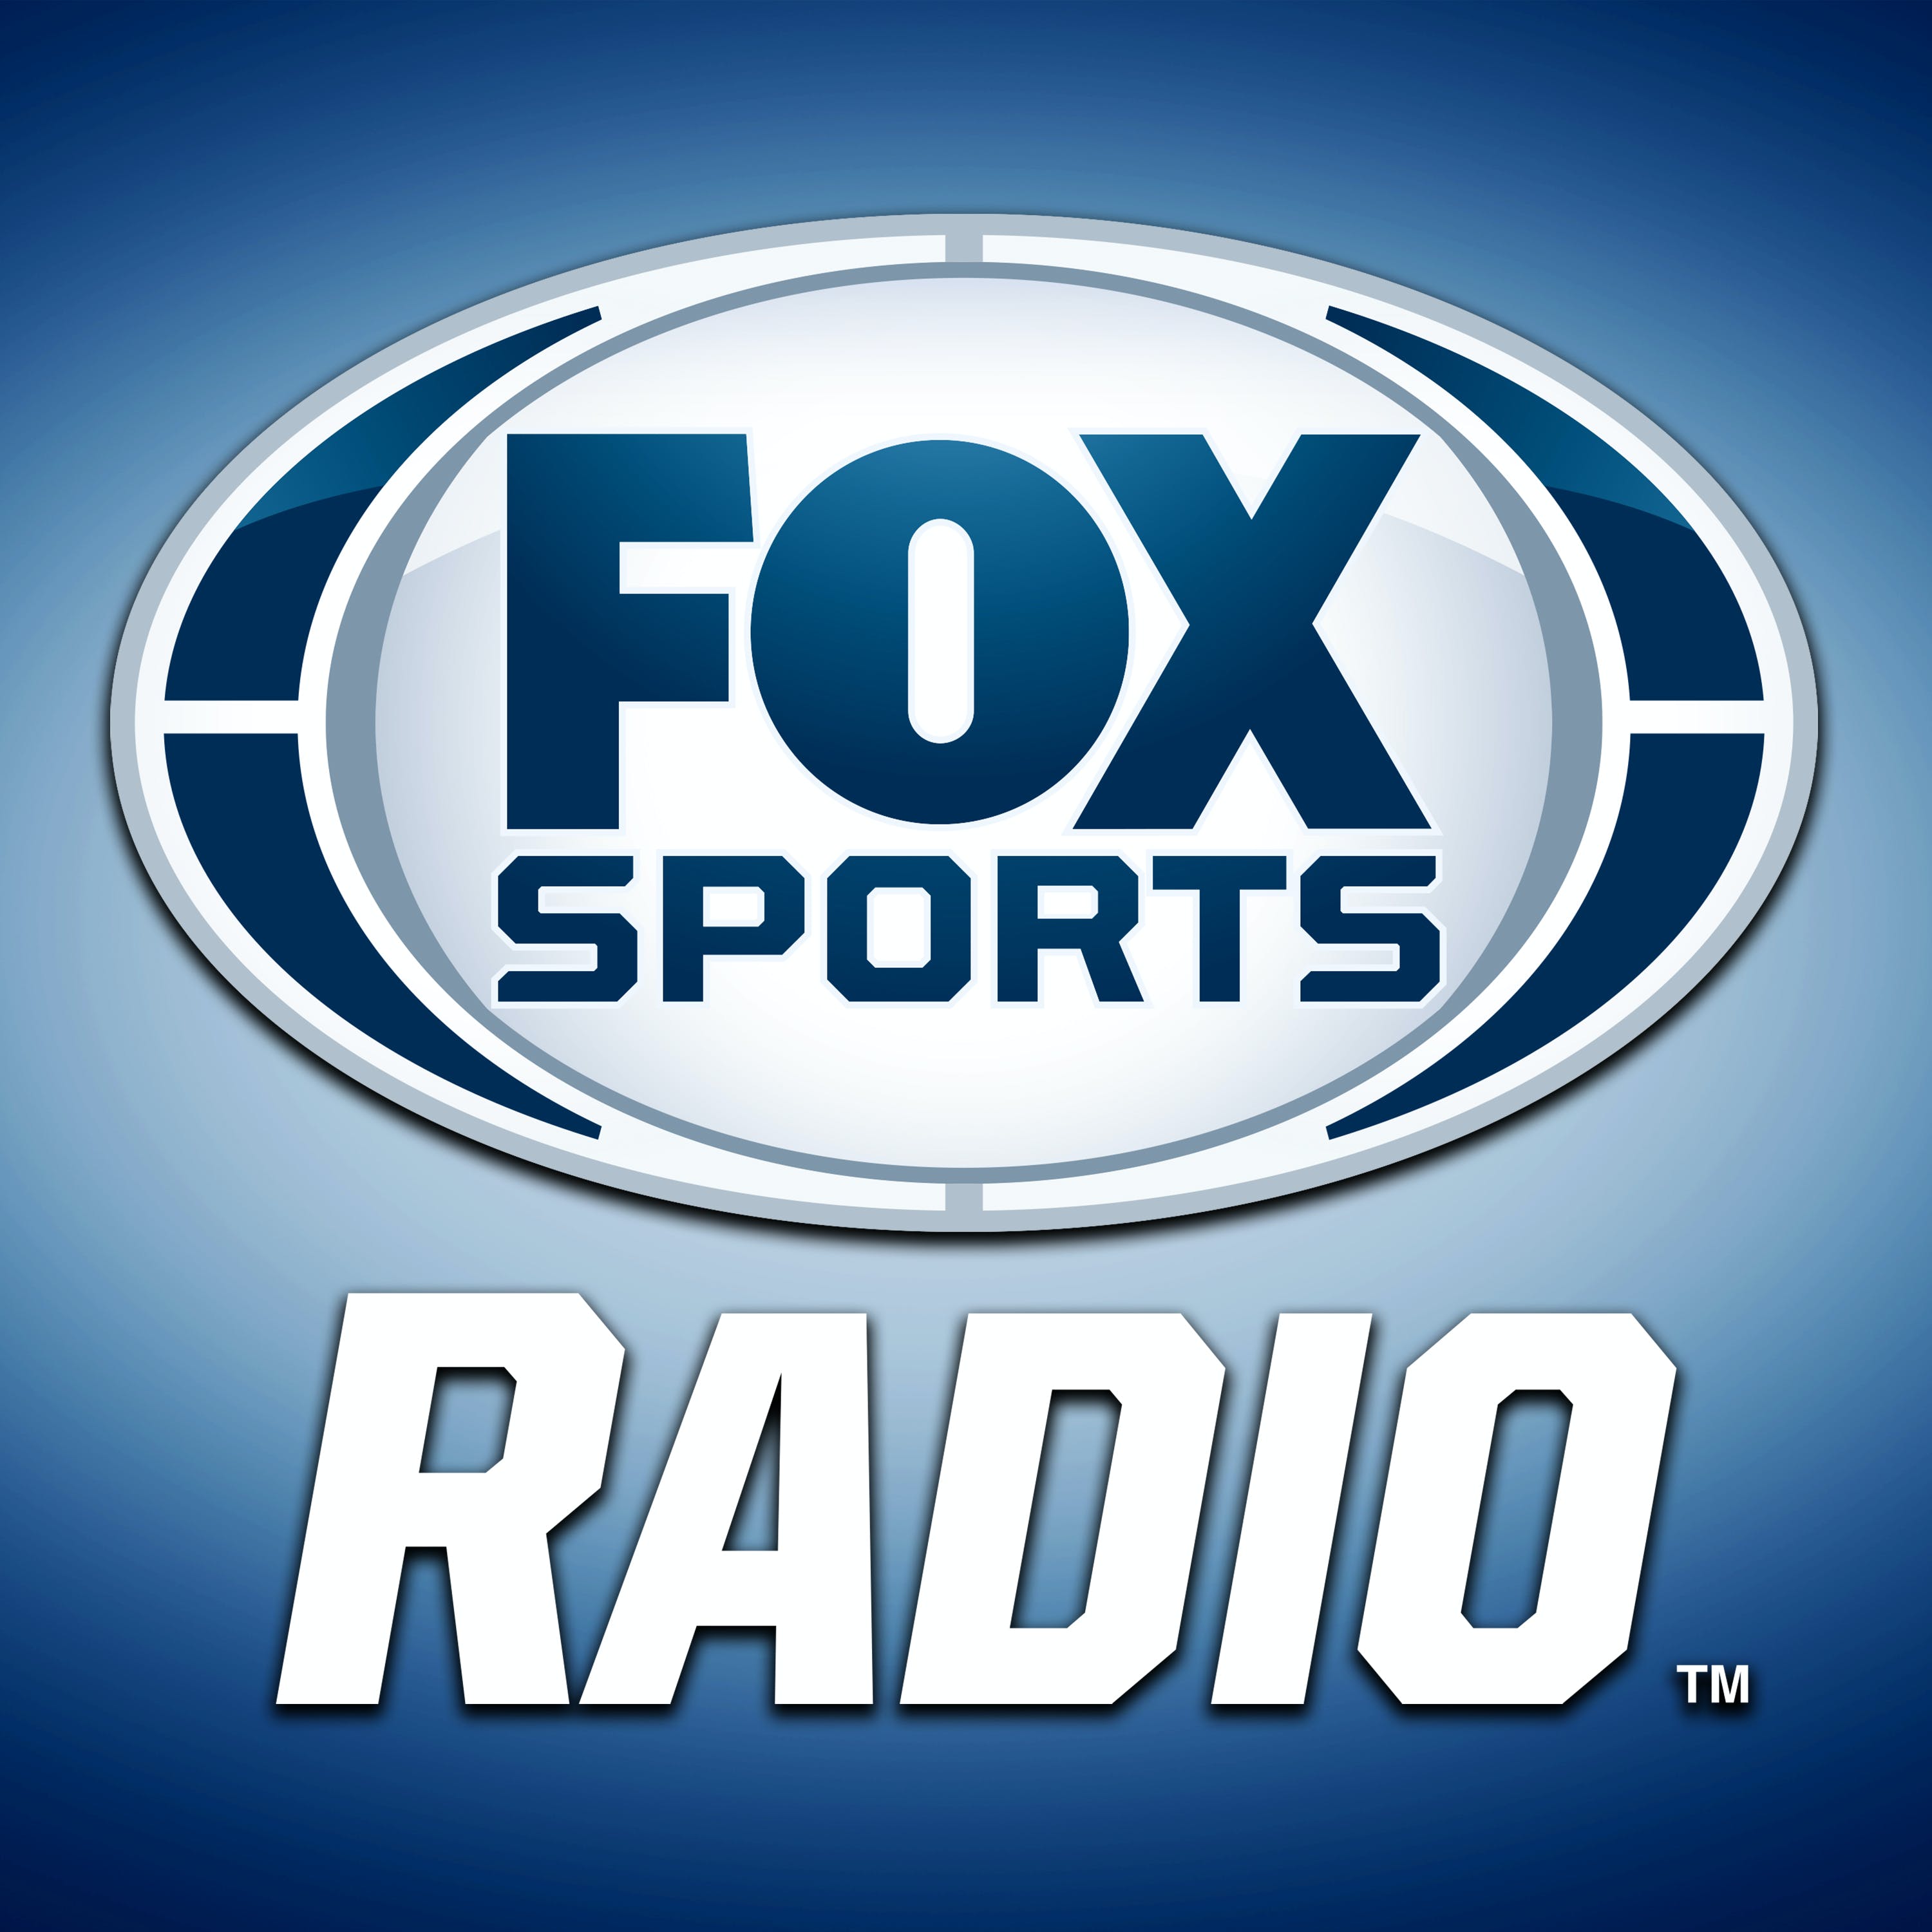 03/06/2021 - FOX Sports Saturday with Steve Hartman and Geoff Schwartz